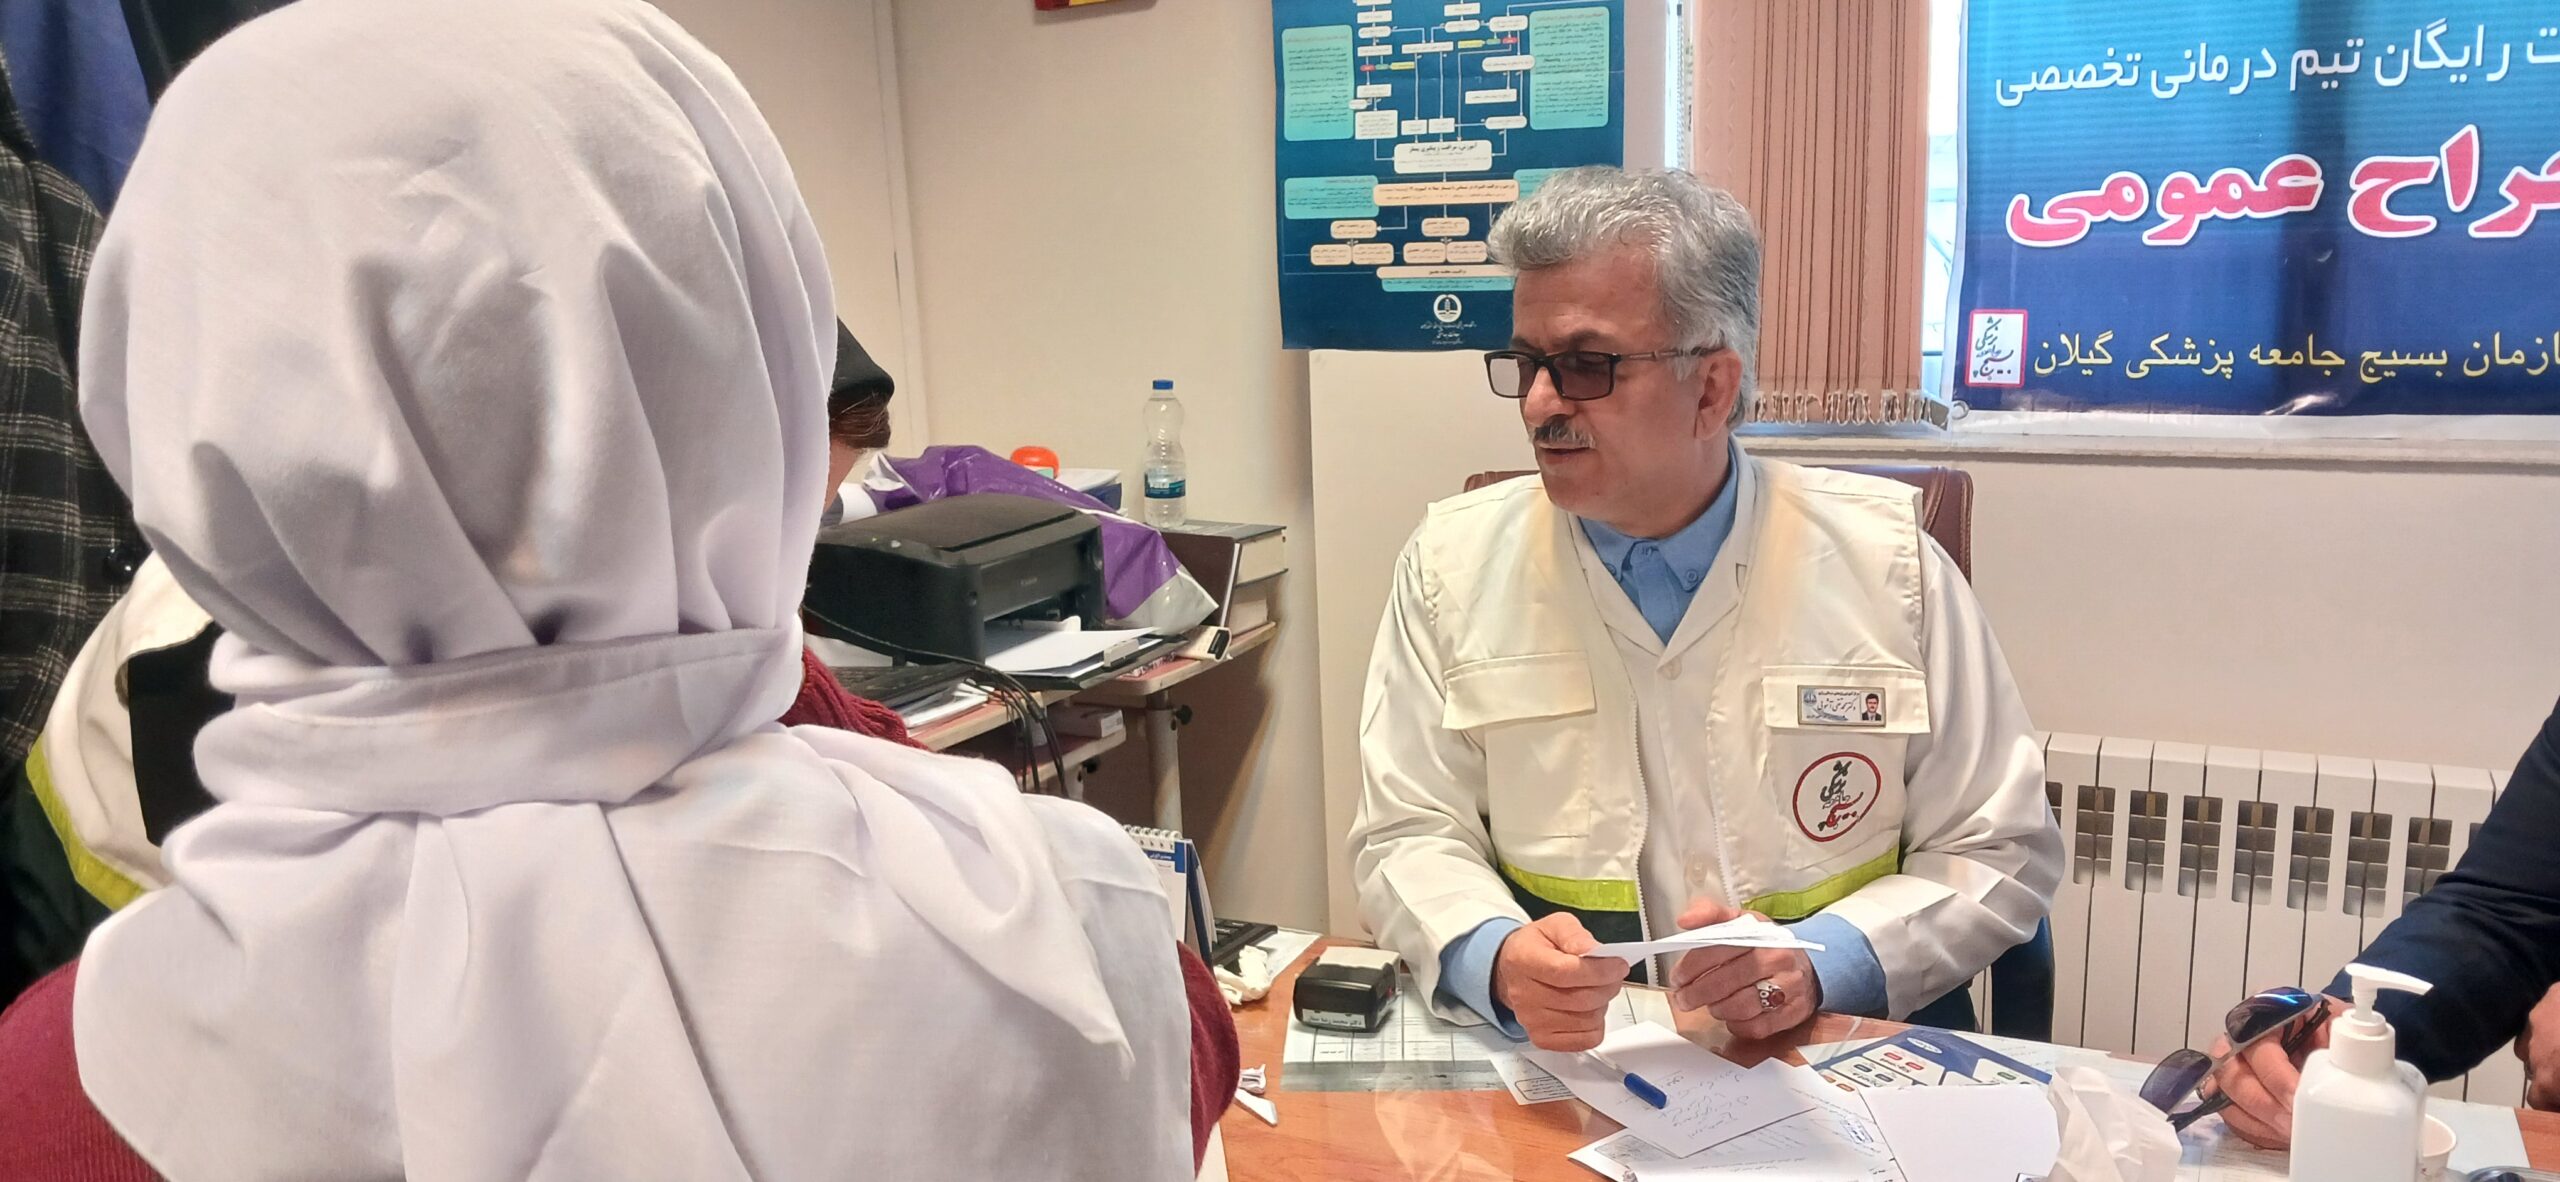 مصاحبه | گفت و گو با رئیس دانشگاه علوم پزشکی گیلان در حاشیه برپایی بیمارستان صحرایی در مناطق محروم تالش